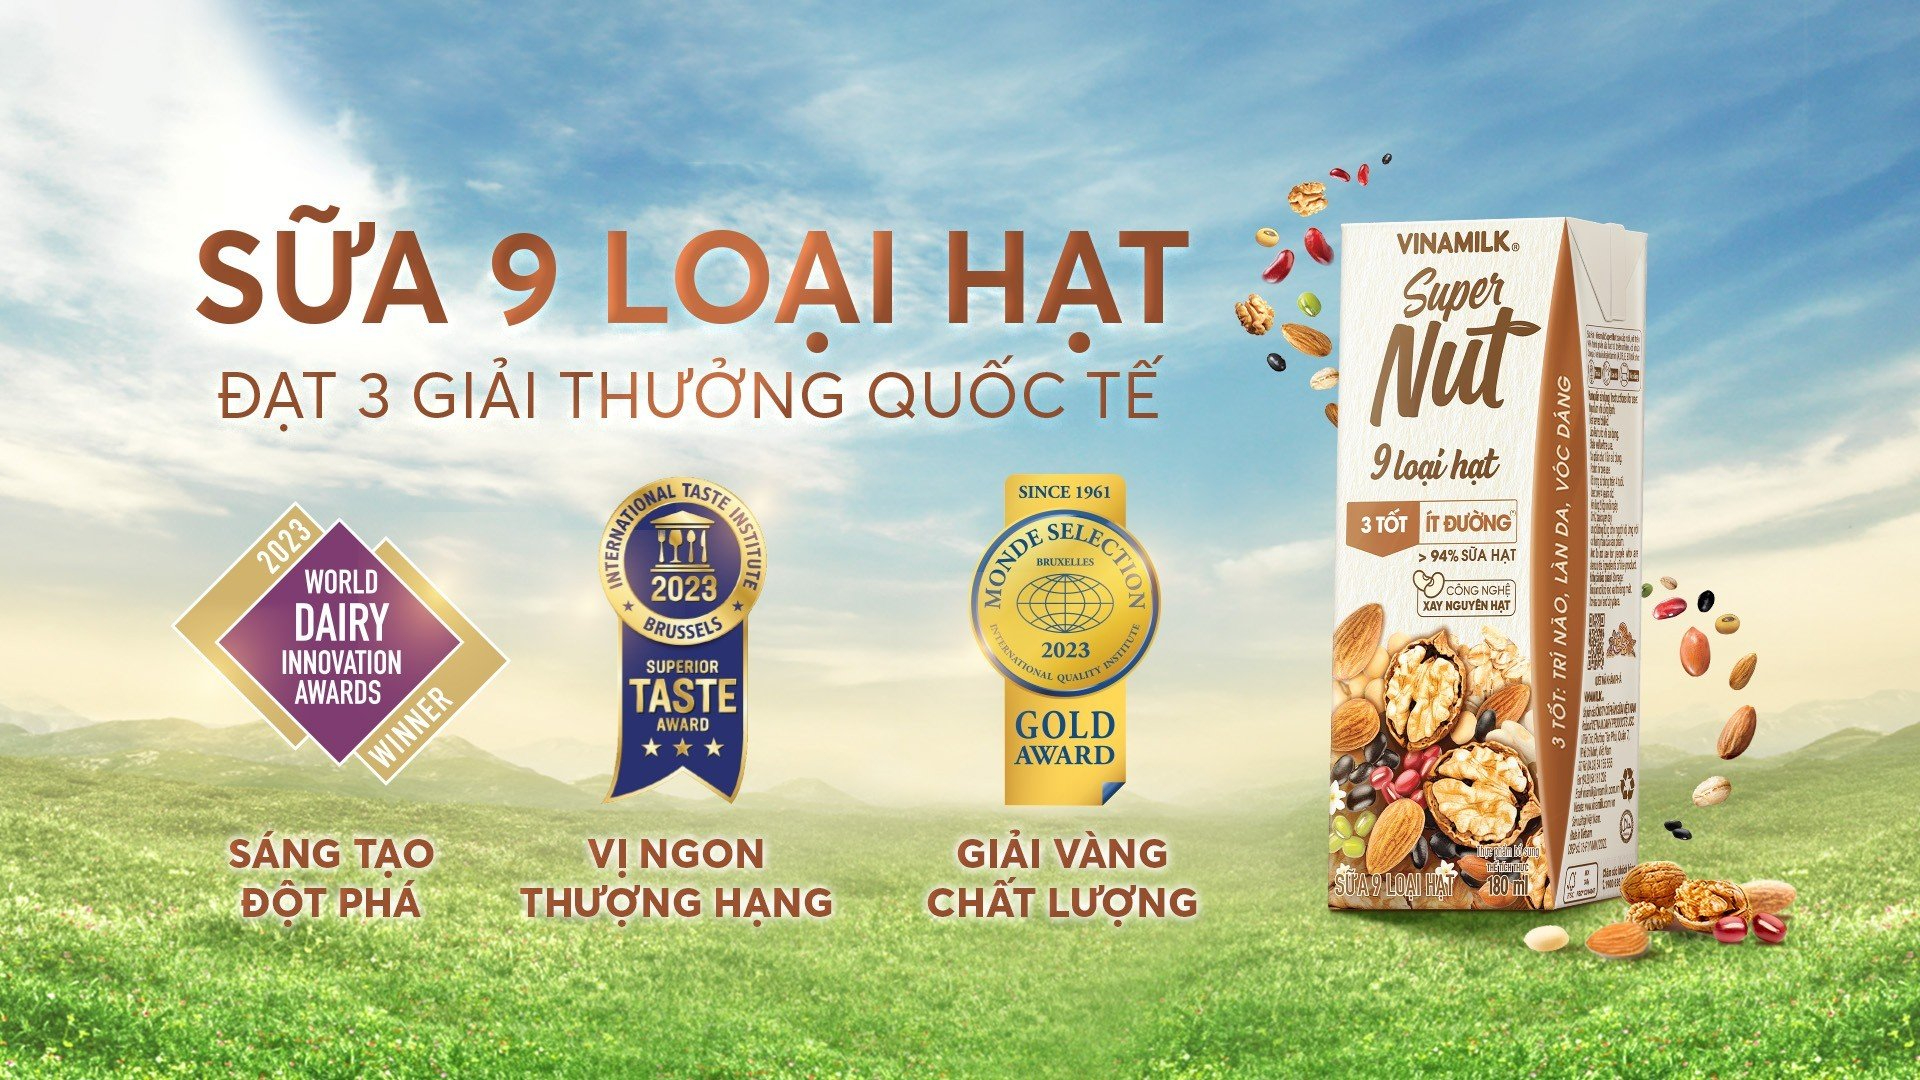 Kinh tế - Bộ sưu tập giải thưởng quốc tế “khủng” của sản phẩm mới ra mắt nhà Vinamilk – Sữa hạt Super Nut